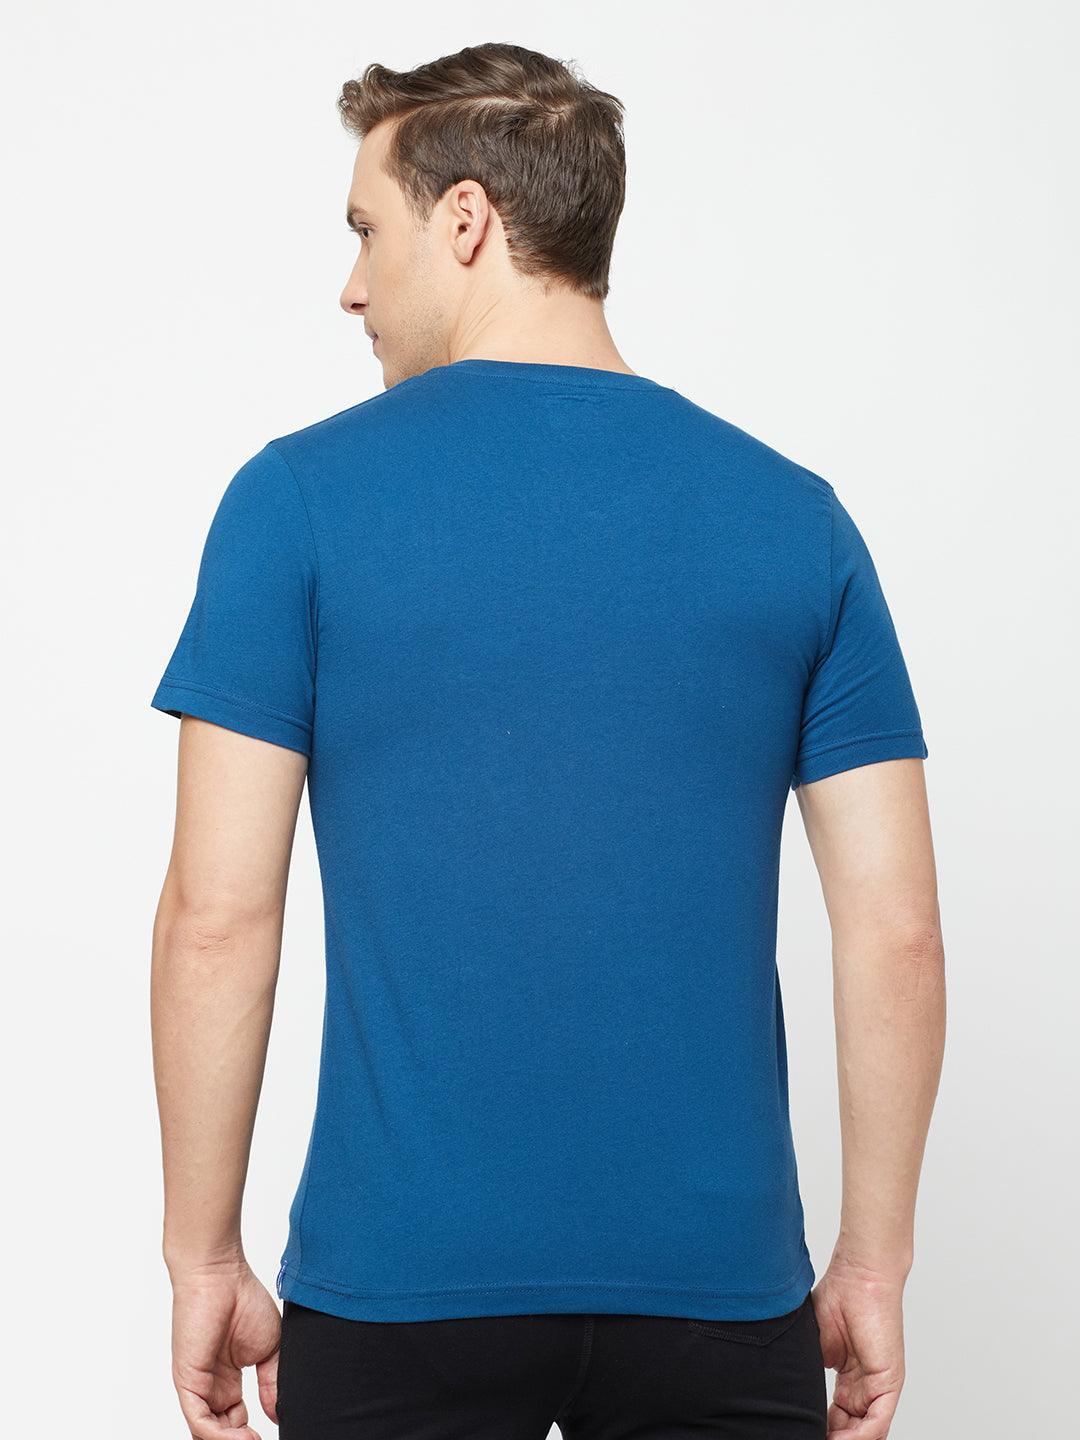 Sporto Men's Slim fit V Neck T-Shirt - Denim Navy